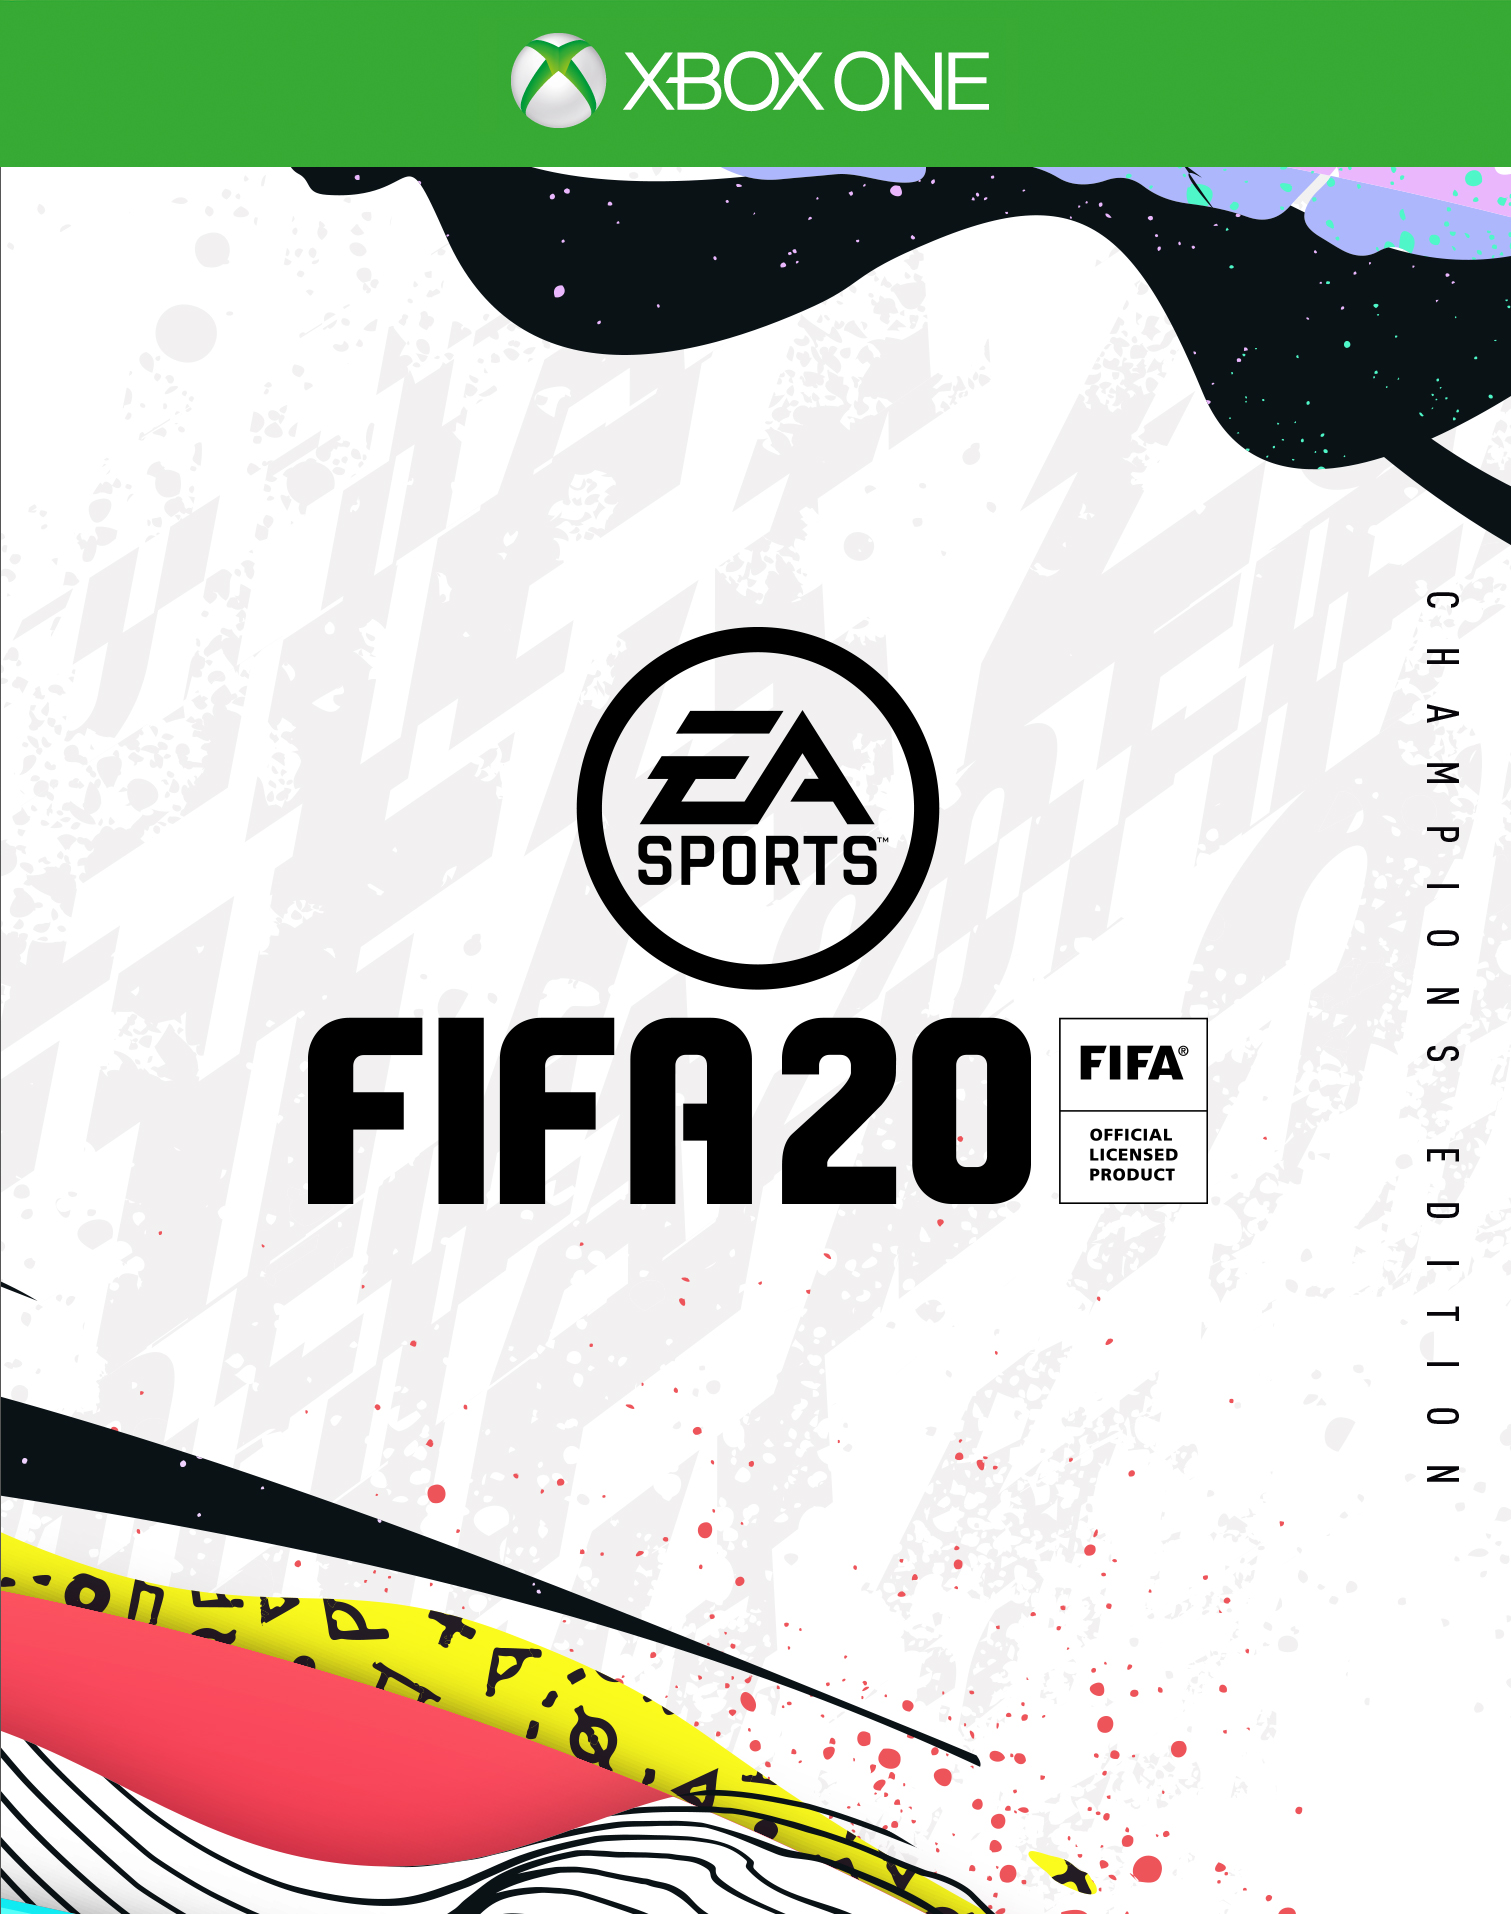 FIFA 20 Champions Edition